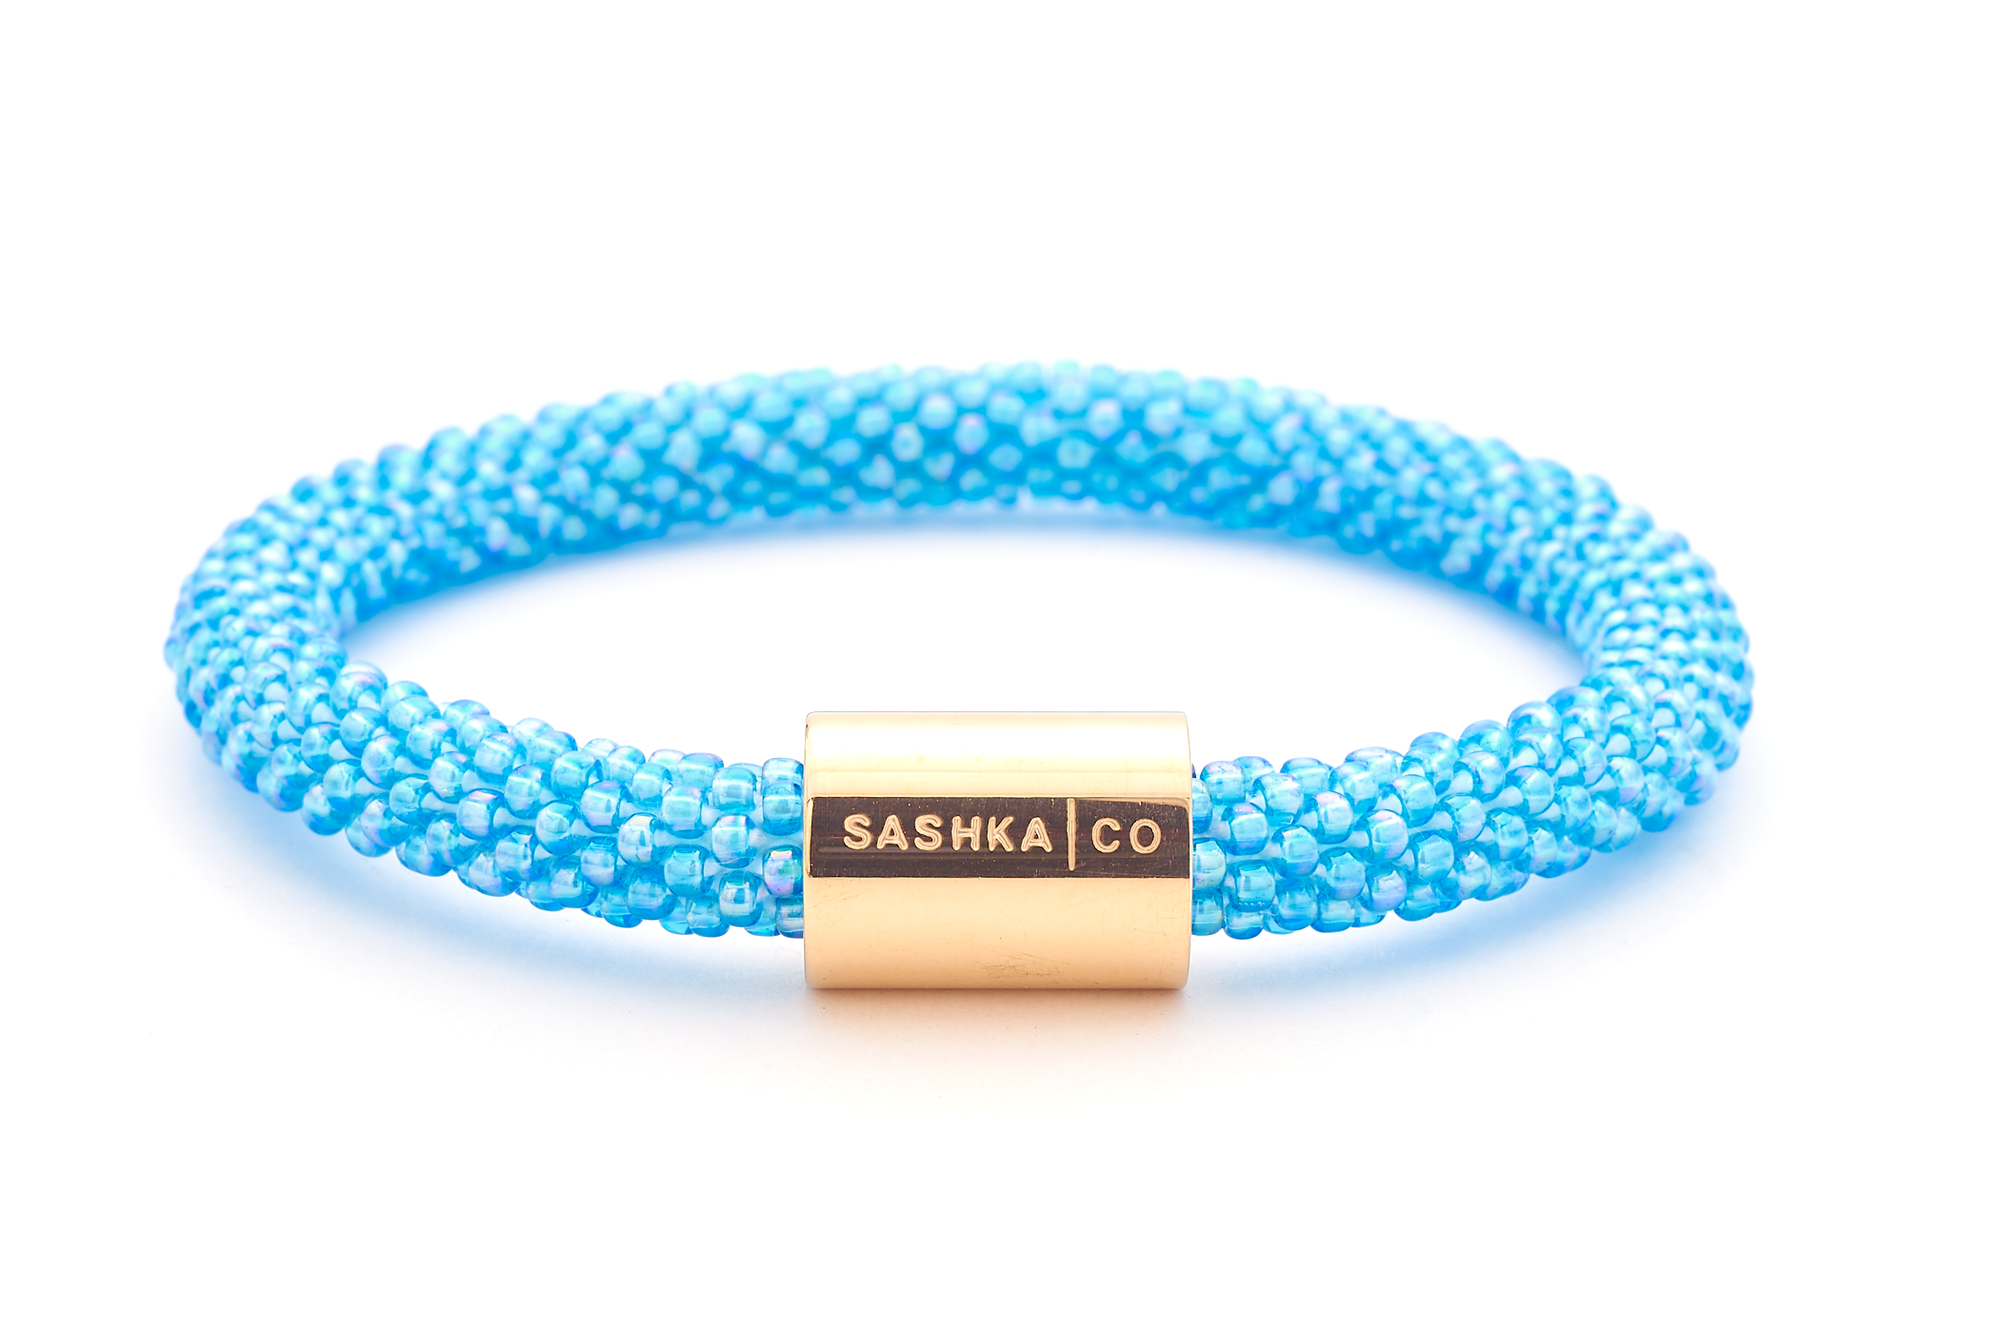 Sashka Co. Extended 8" Bracelet Blue / w Gold Semicolon Charm Semicolon Charm Bracelet - Extended 8"